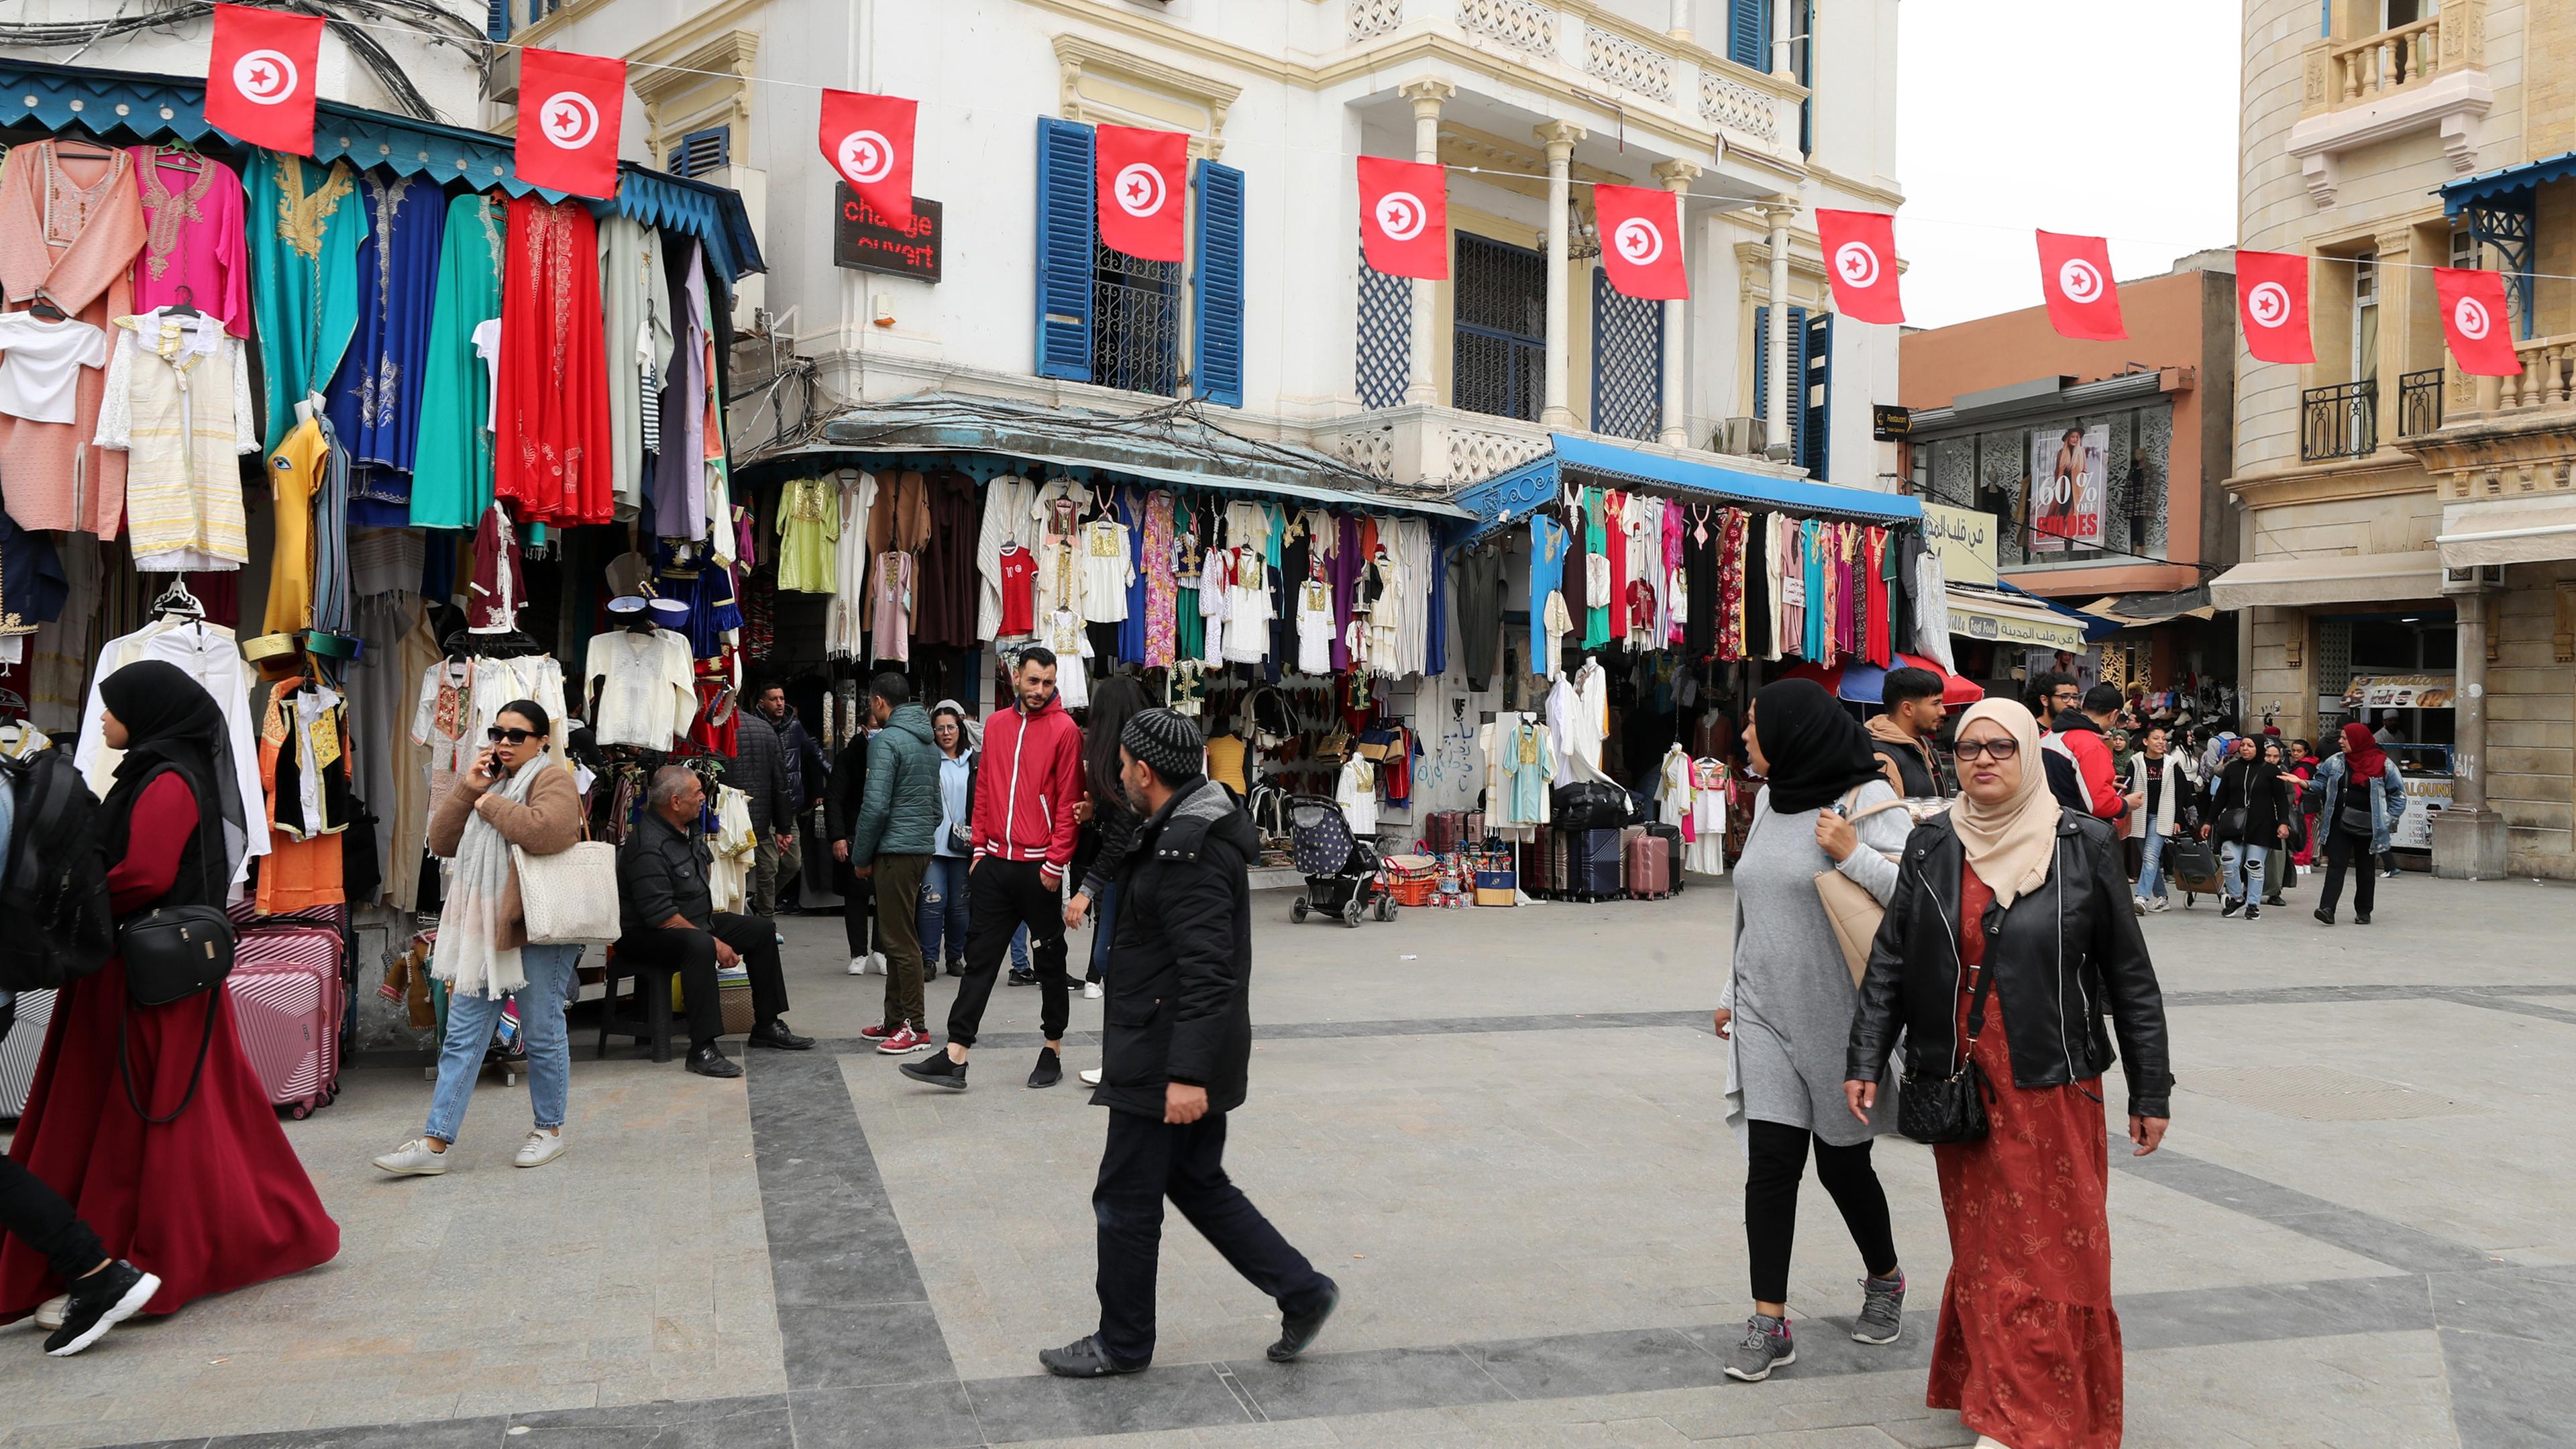 Eine belebte Straße mit Marktsänden in Tunesien. Über der Straße hängt eine Girlande aus der tunesischen Flagge.